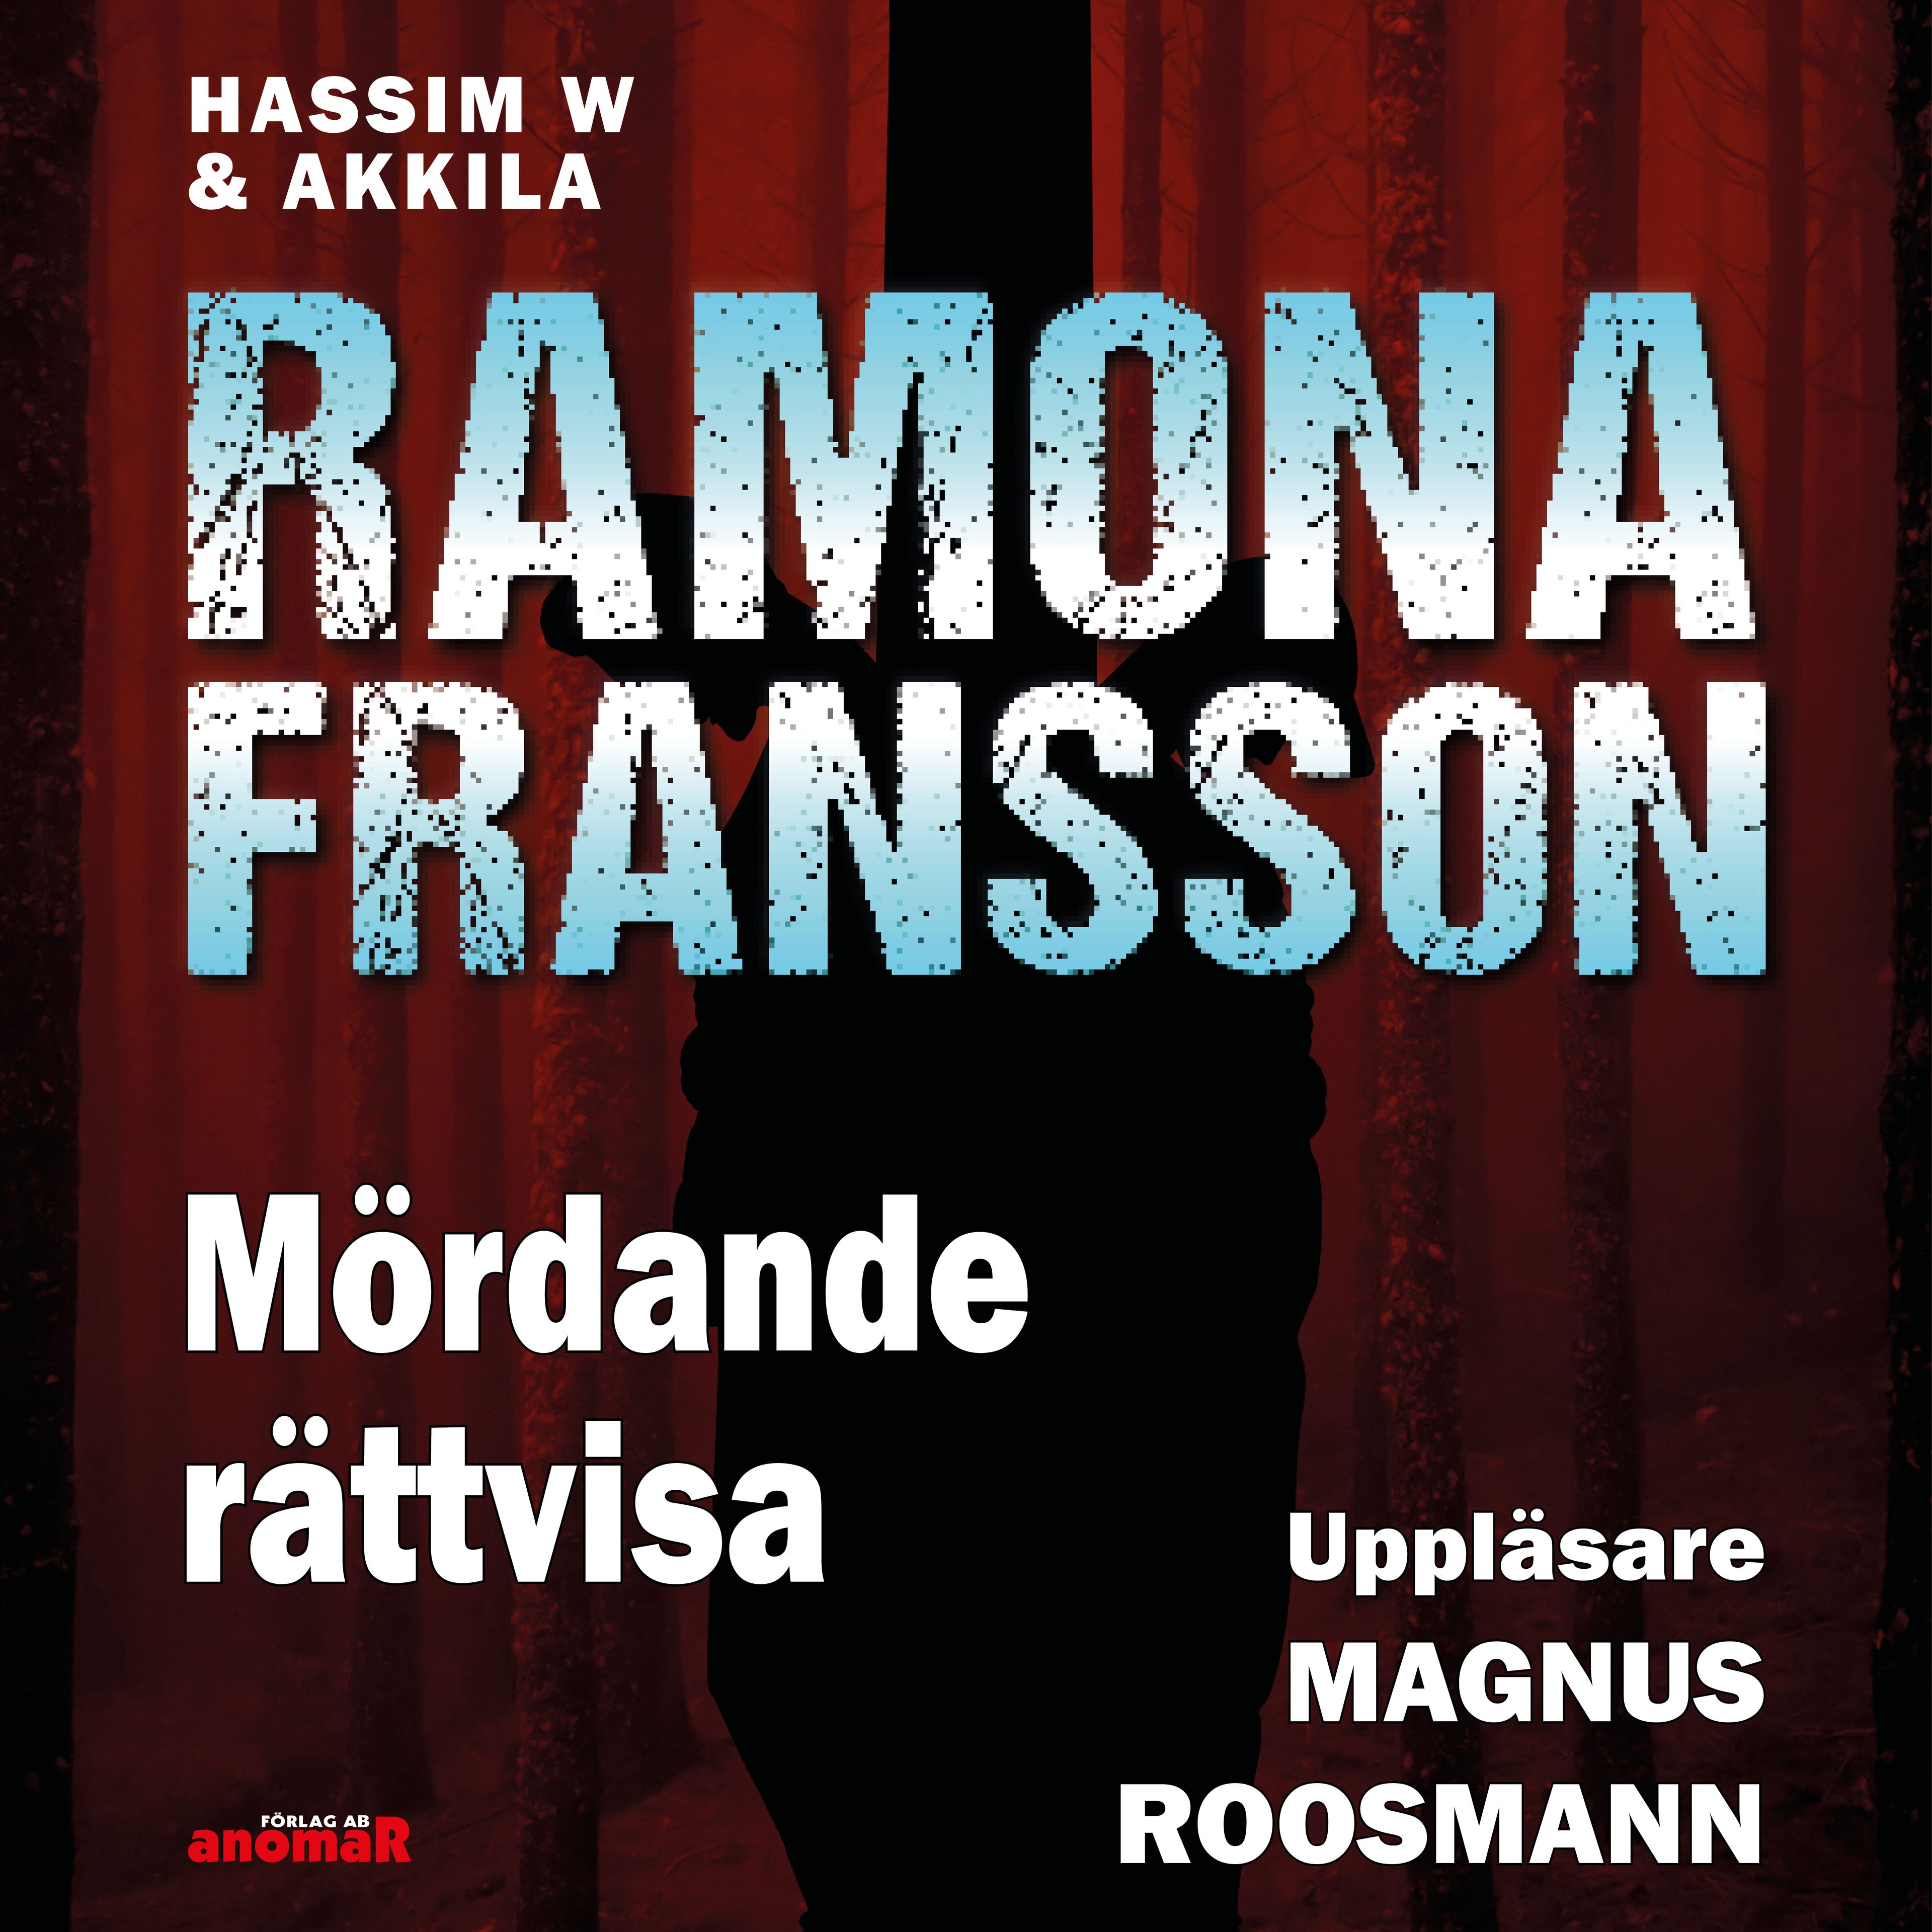 HW & Akkila, Mördande rättvisa, ljudbok av Ramona Fransson